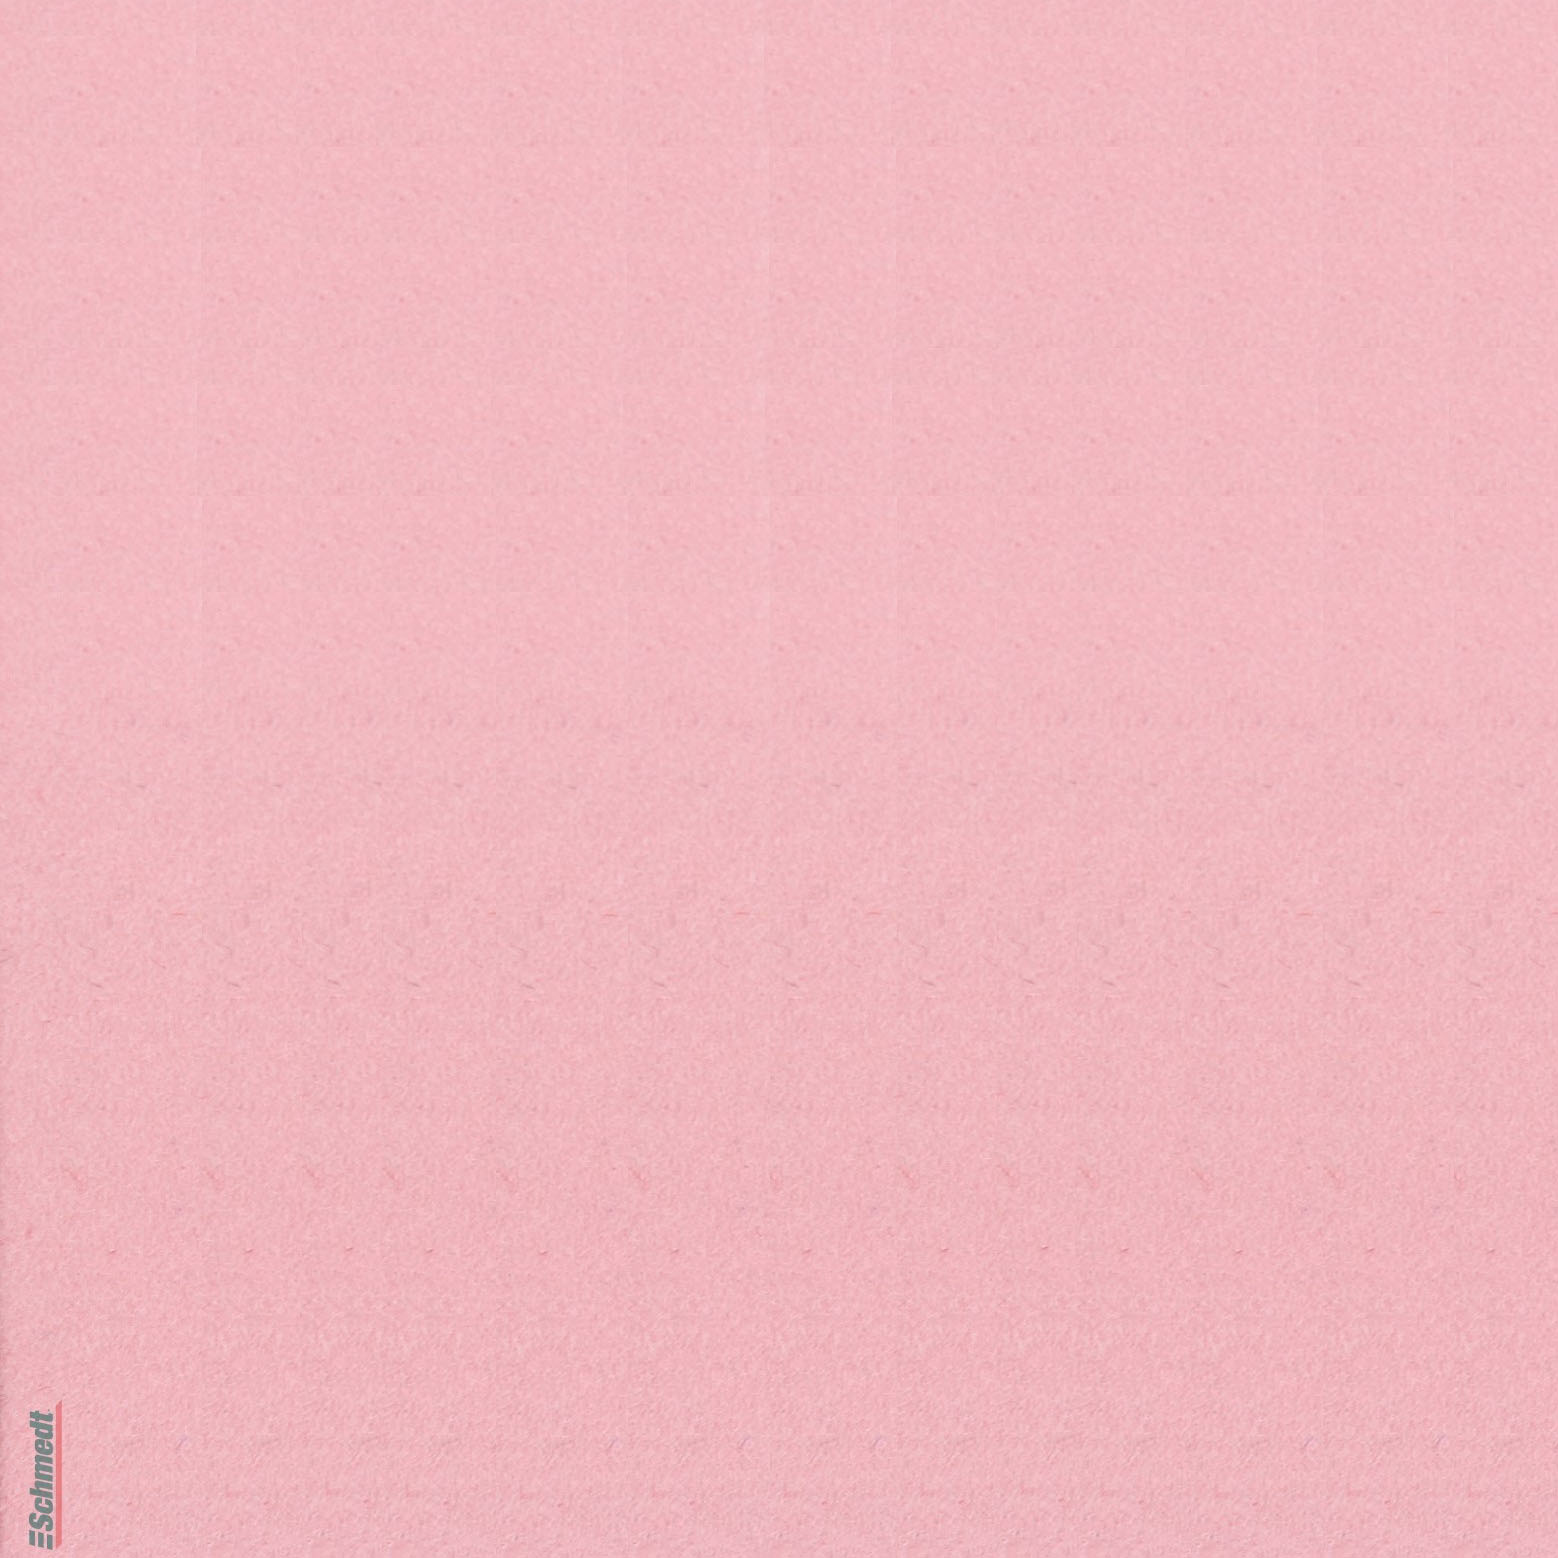 Velours-Papier - Farbe 531 - rosa - zum Beziehen von Büchern, Schachteln, als Innenfutter für Kästen und Schuber, zum Gestalten von Einladun...